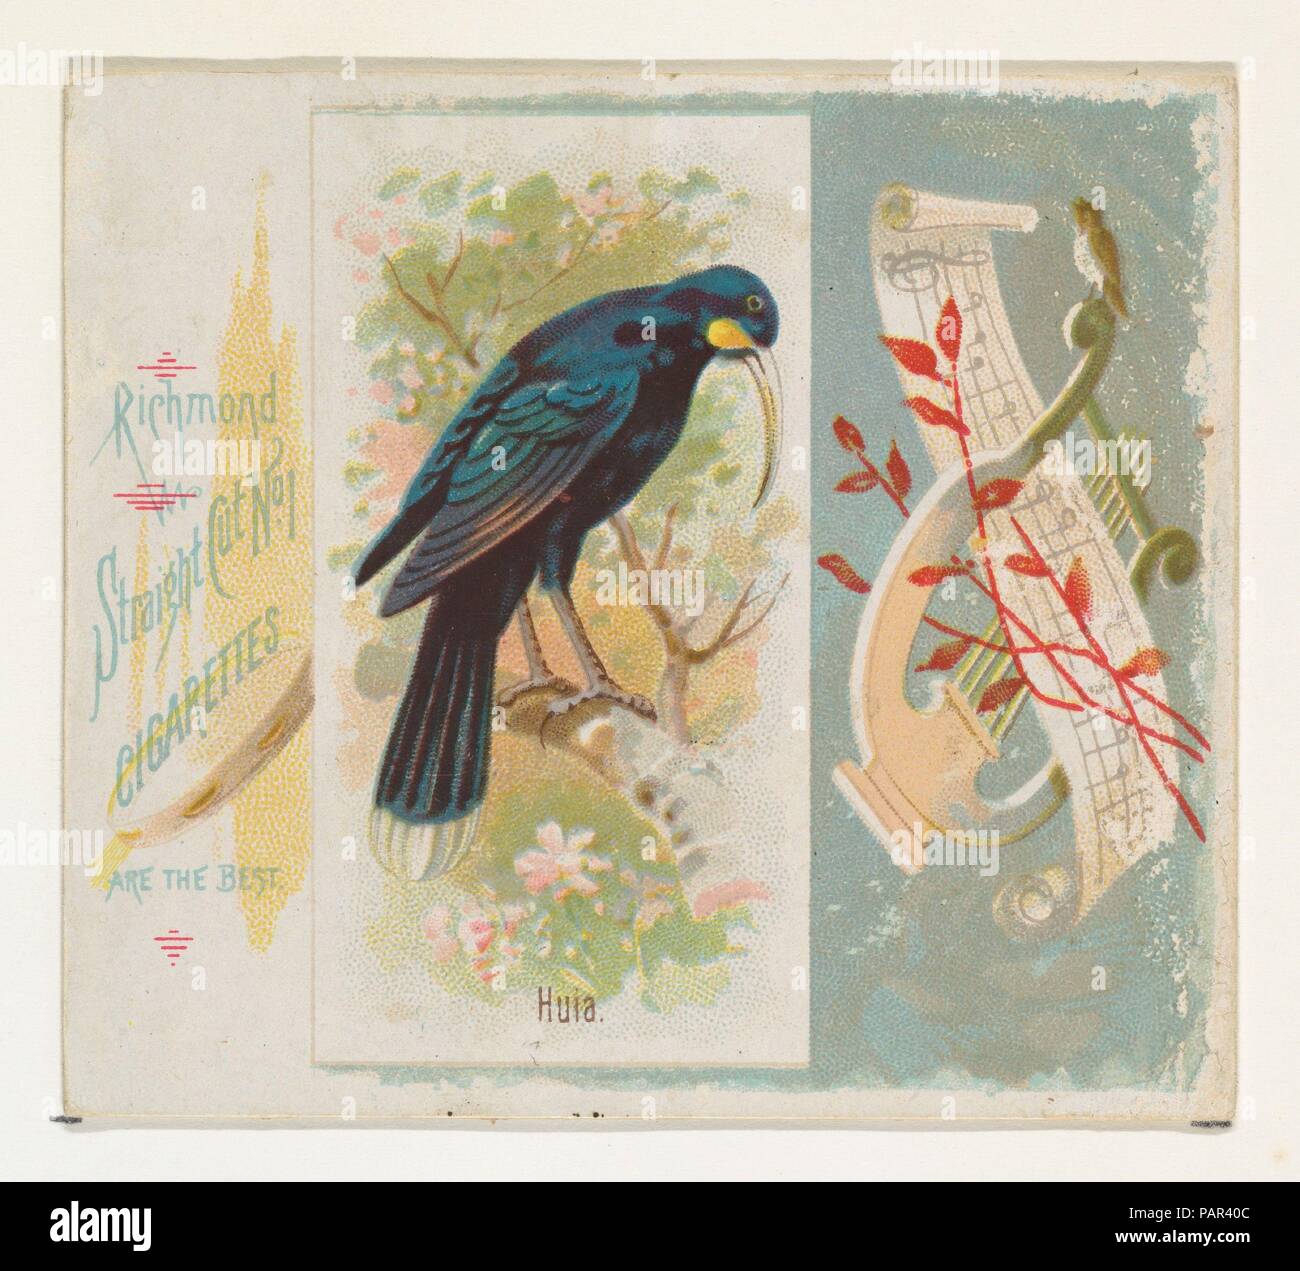 L'évaluation de l'impact humain, du chant des oiseaux de la série mondiale (N42) pour Allen & Ginter Cigarettes. Fiche Technique : Dimensions : 2 7/8 x 3 1/4 in. (7,3 x 8,3 cm). Lithographe : George S. Harris & Sons (Américain, Philadelphie). Editeur : Publié par Allen & Ginter (Américain, Richmond, Virginie). Date : 1890. Les grandes cartes de la 'chant oiseaux du monde" (N42), publié en 1890 dans un jeu de 50 cartes pour promouvoir Allen & Ginter cigarettes d'une marque. Série N42 reproduit les cartes à partir de la N23 dans un format plus grand. Musée : Metropolitan Museum of Art, New York, USA. Banque D'Images